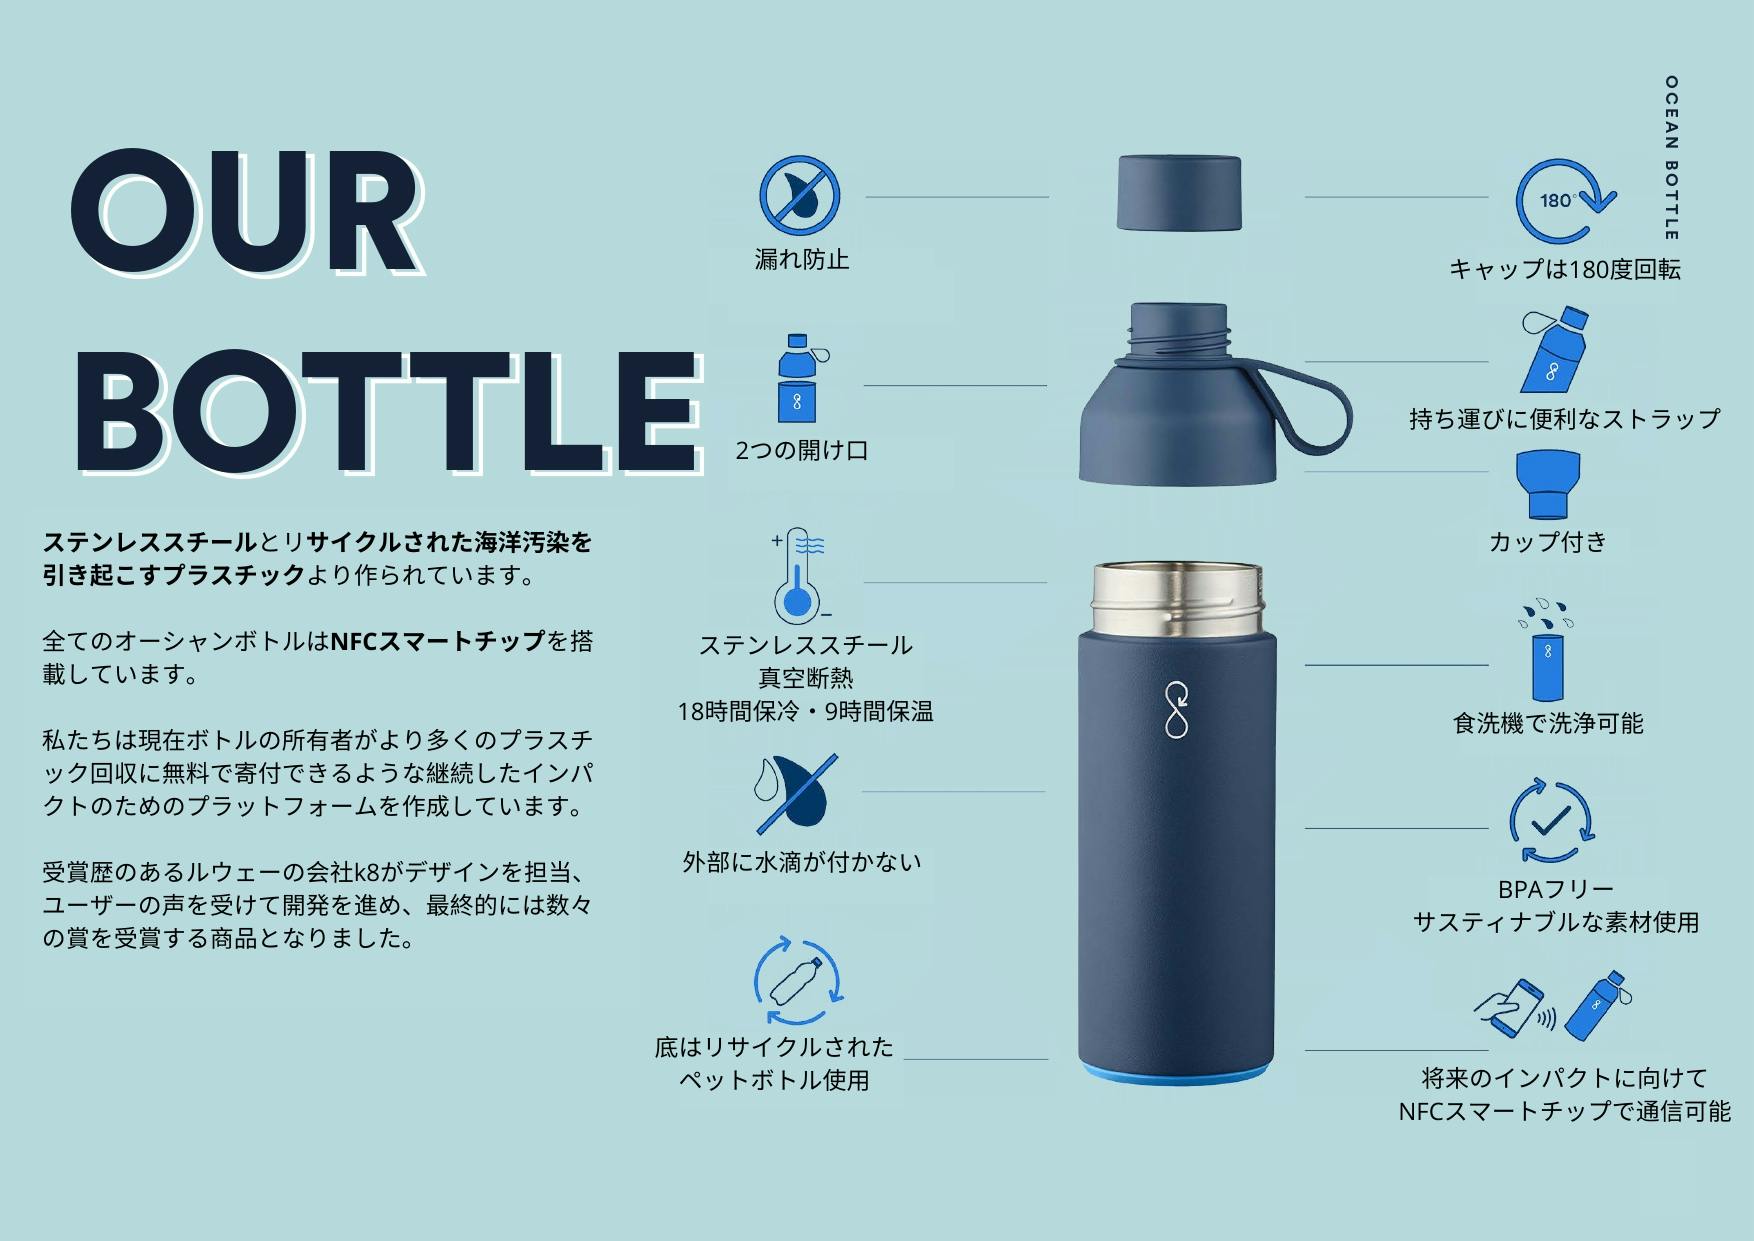 海洋汚染と戦う、エコで便利な水筒オーシャンボトル - CAMPFIRE